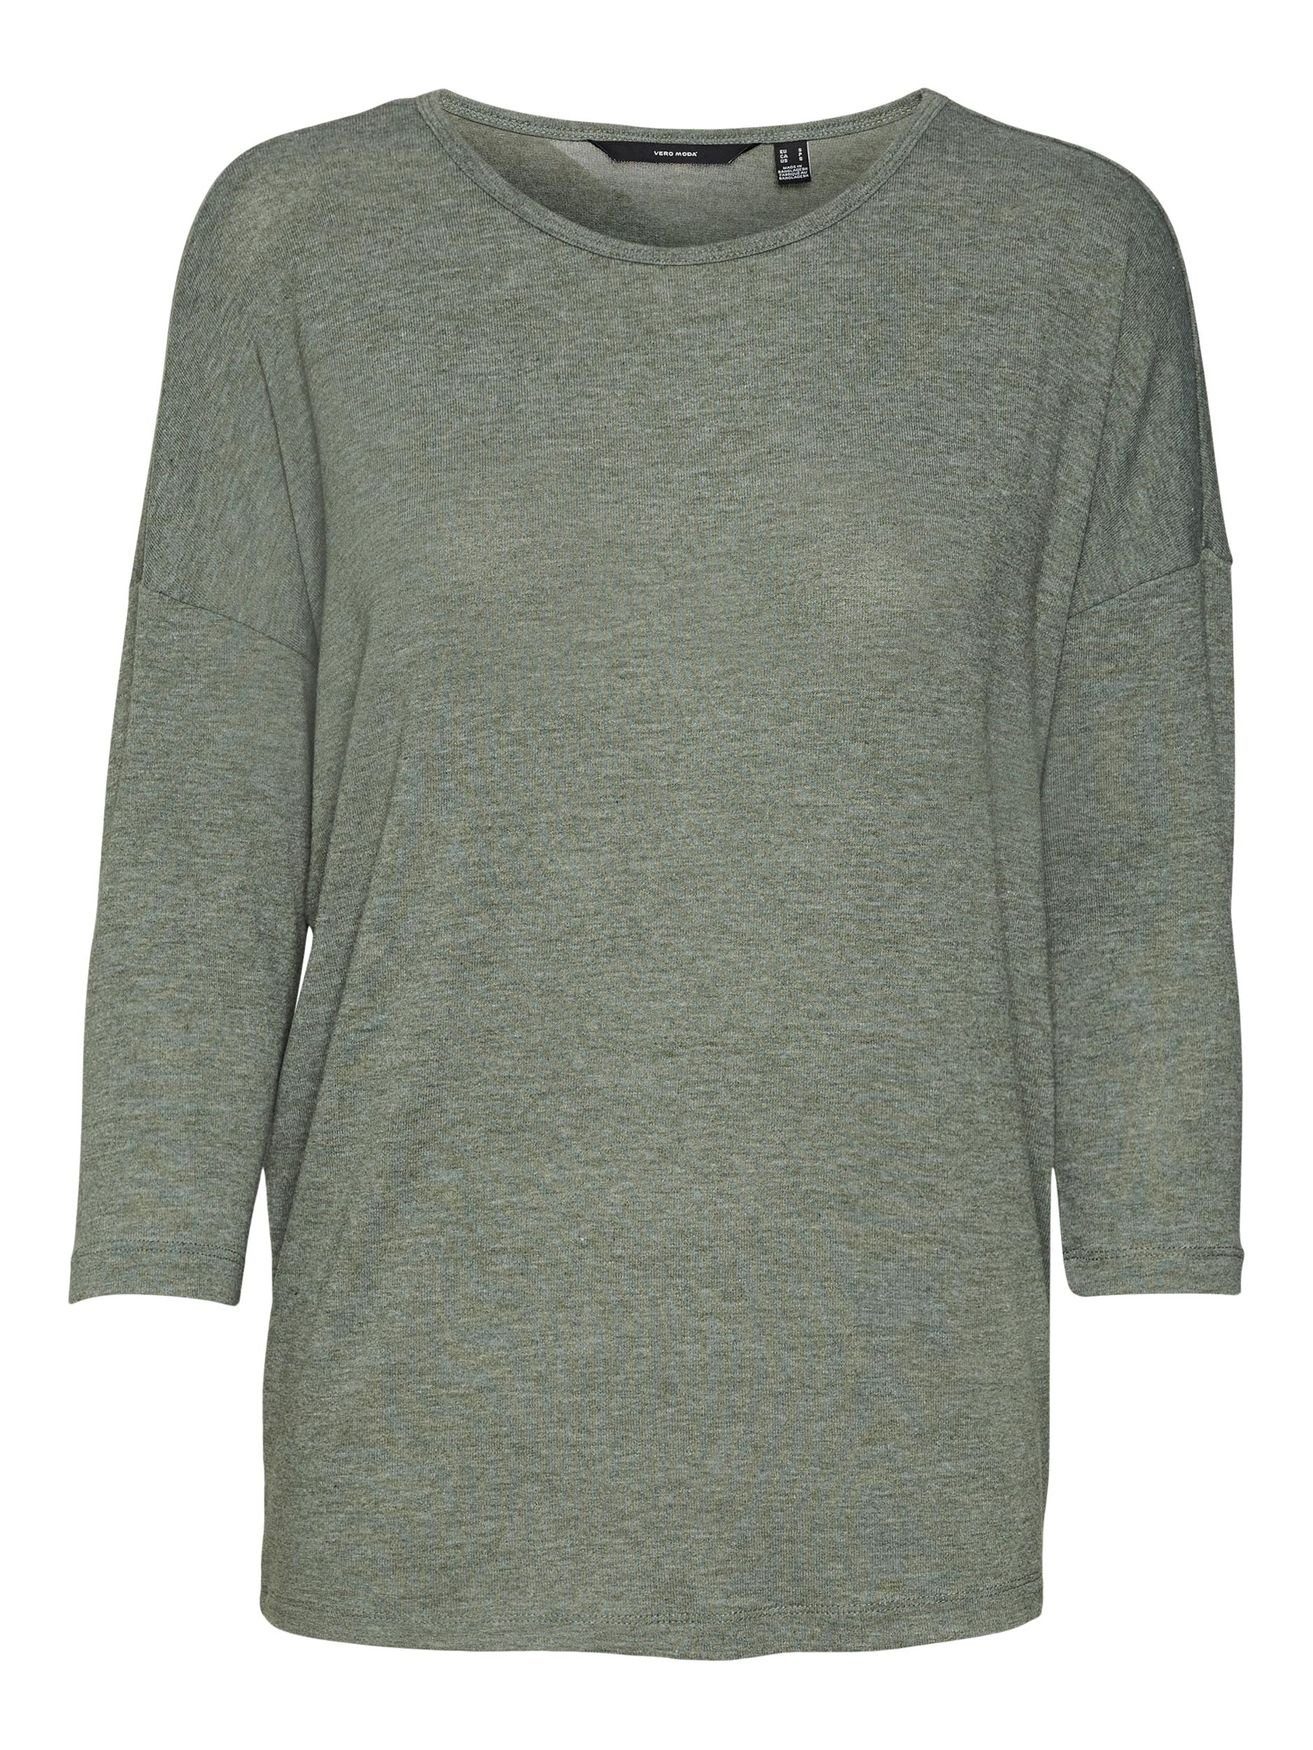 Vero Moda T-Shirt Grün 3/4 in Top Einfarbiges Oberteil Shirt Langarm Arm Rundhals VMCARLA 4856